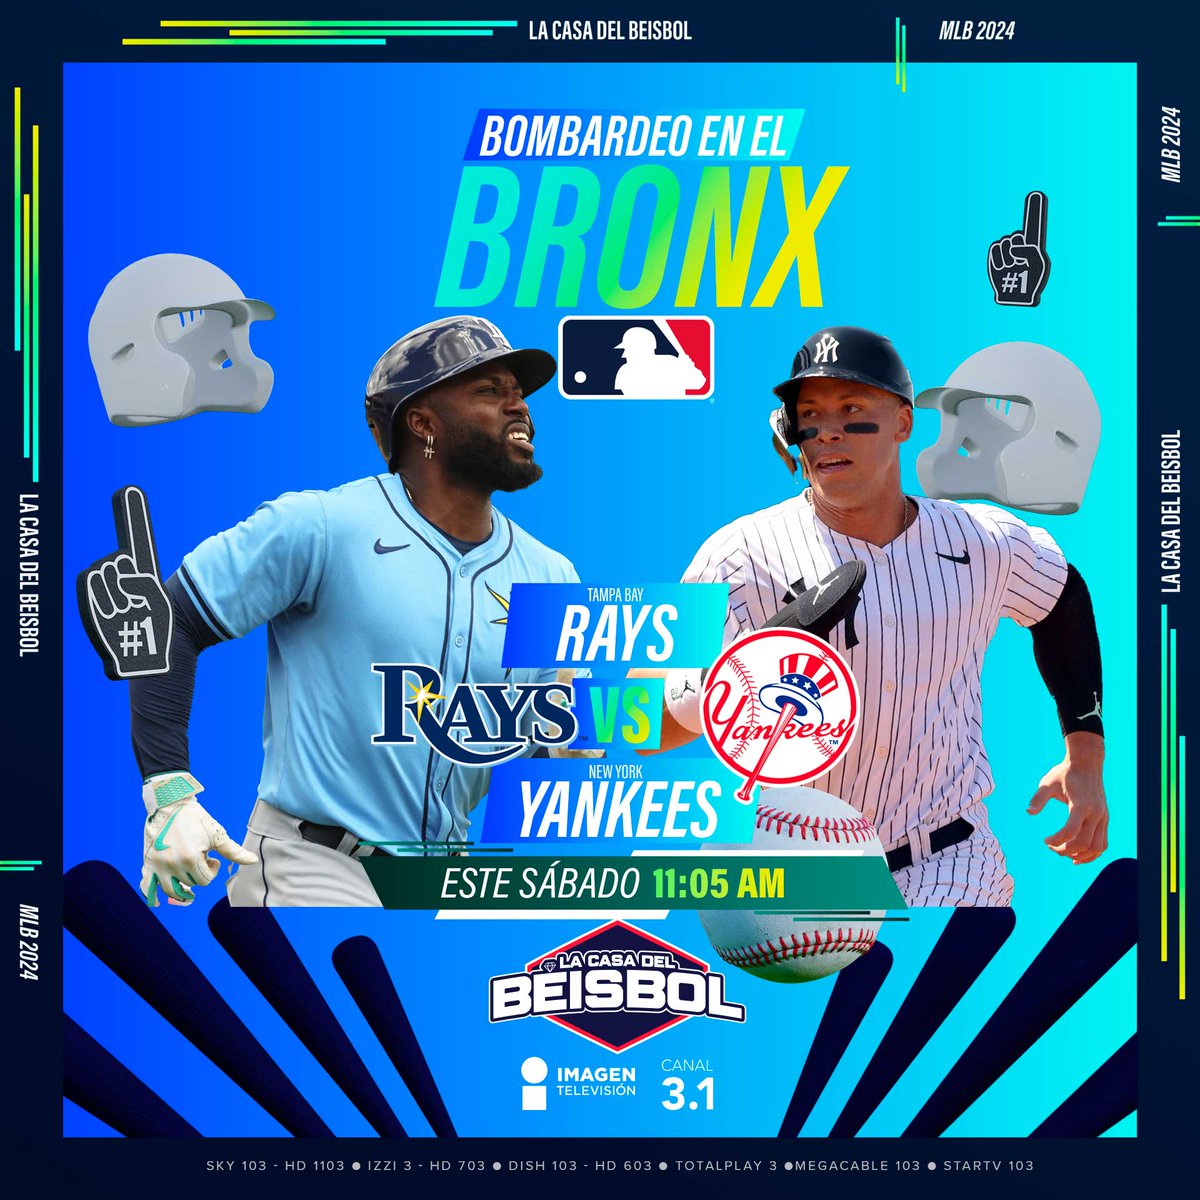 ¡#RandyArozarena e #IsaacParedes enfrentarán a la novena más odiada y amada a la vez!🔥🔥🔥

➡️ #Rays vs. #Yankees 

Este sábado, 11:05 am por #ImagenTelevisión, #LaCasaDelBeisbol.

#BeisbolEnImagen